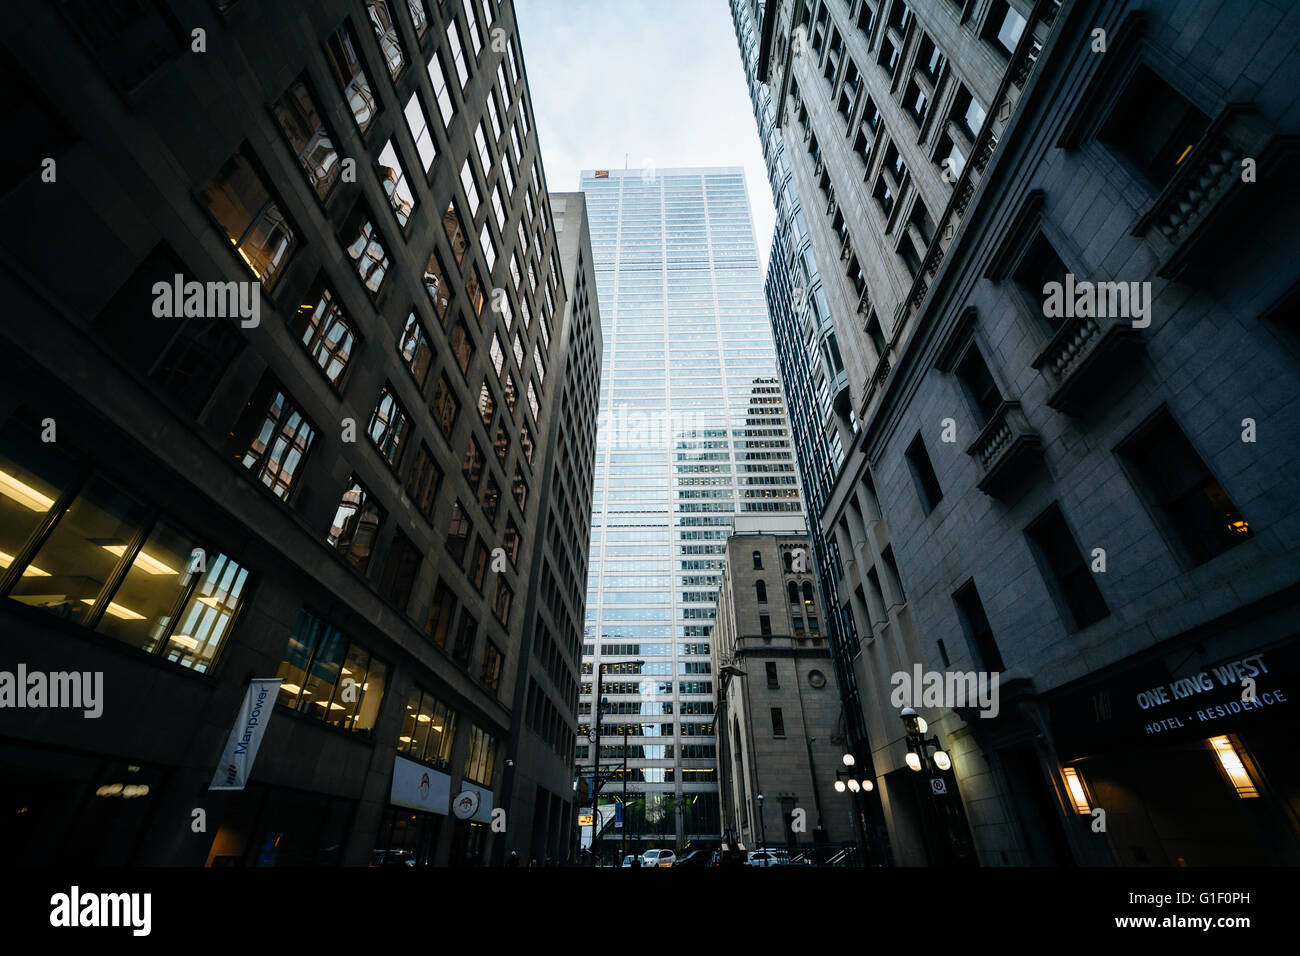 Les gratte-ciel modernes dans le quartier financier du centre-ville de Toronto, Ontario. Banque D'Images